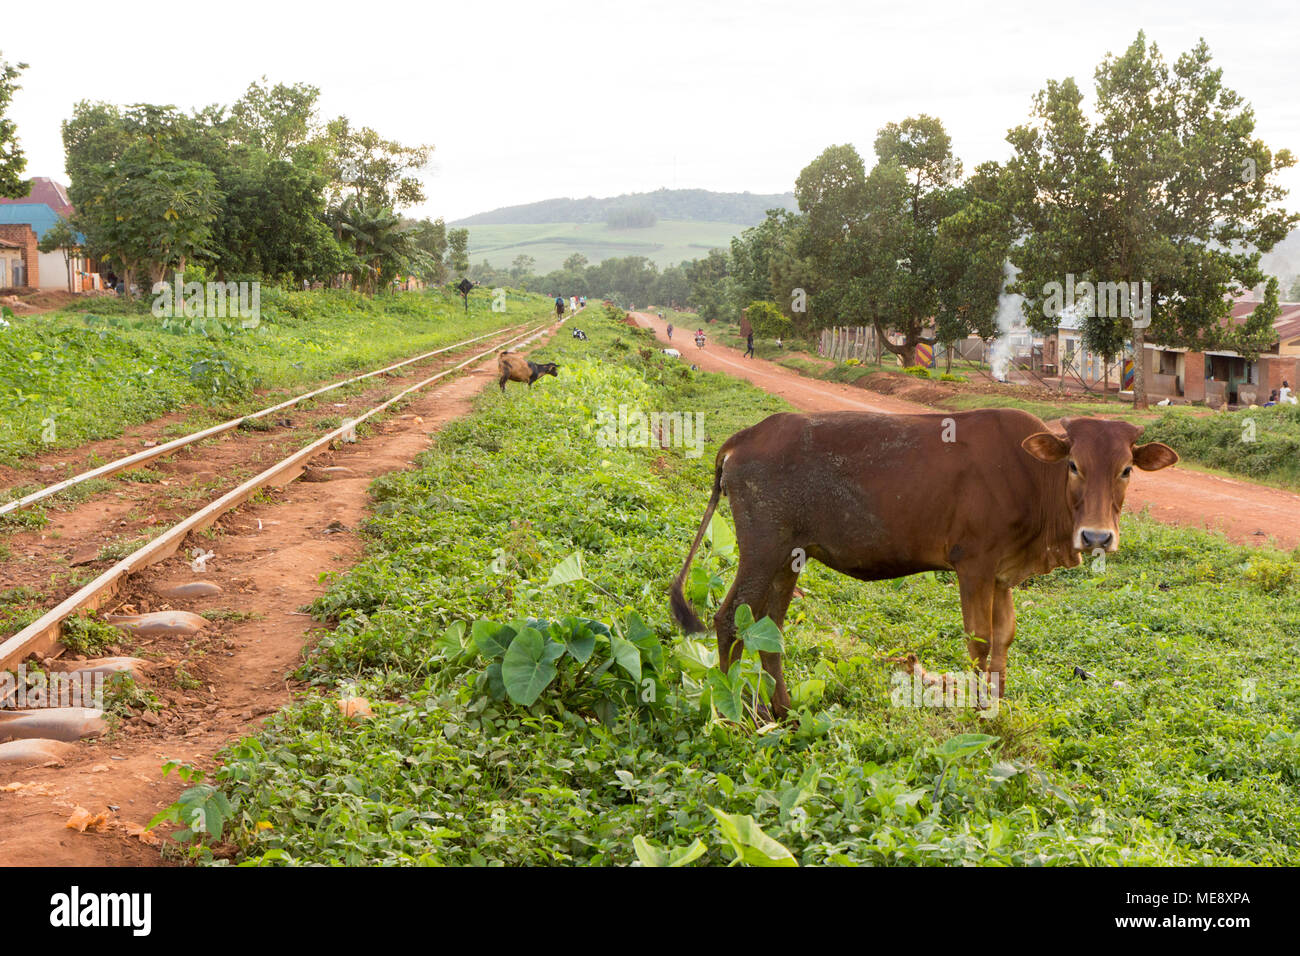 Lugazi, Uganda. 17 May 2017. A cow and a goat grazing near a railway track. People walking along it. Stock Photo